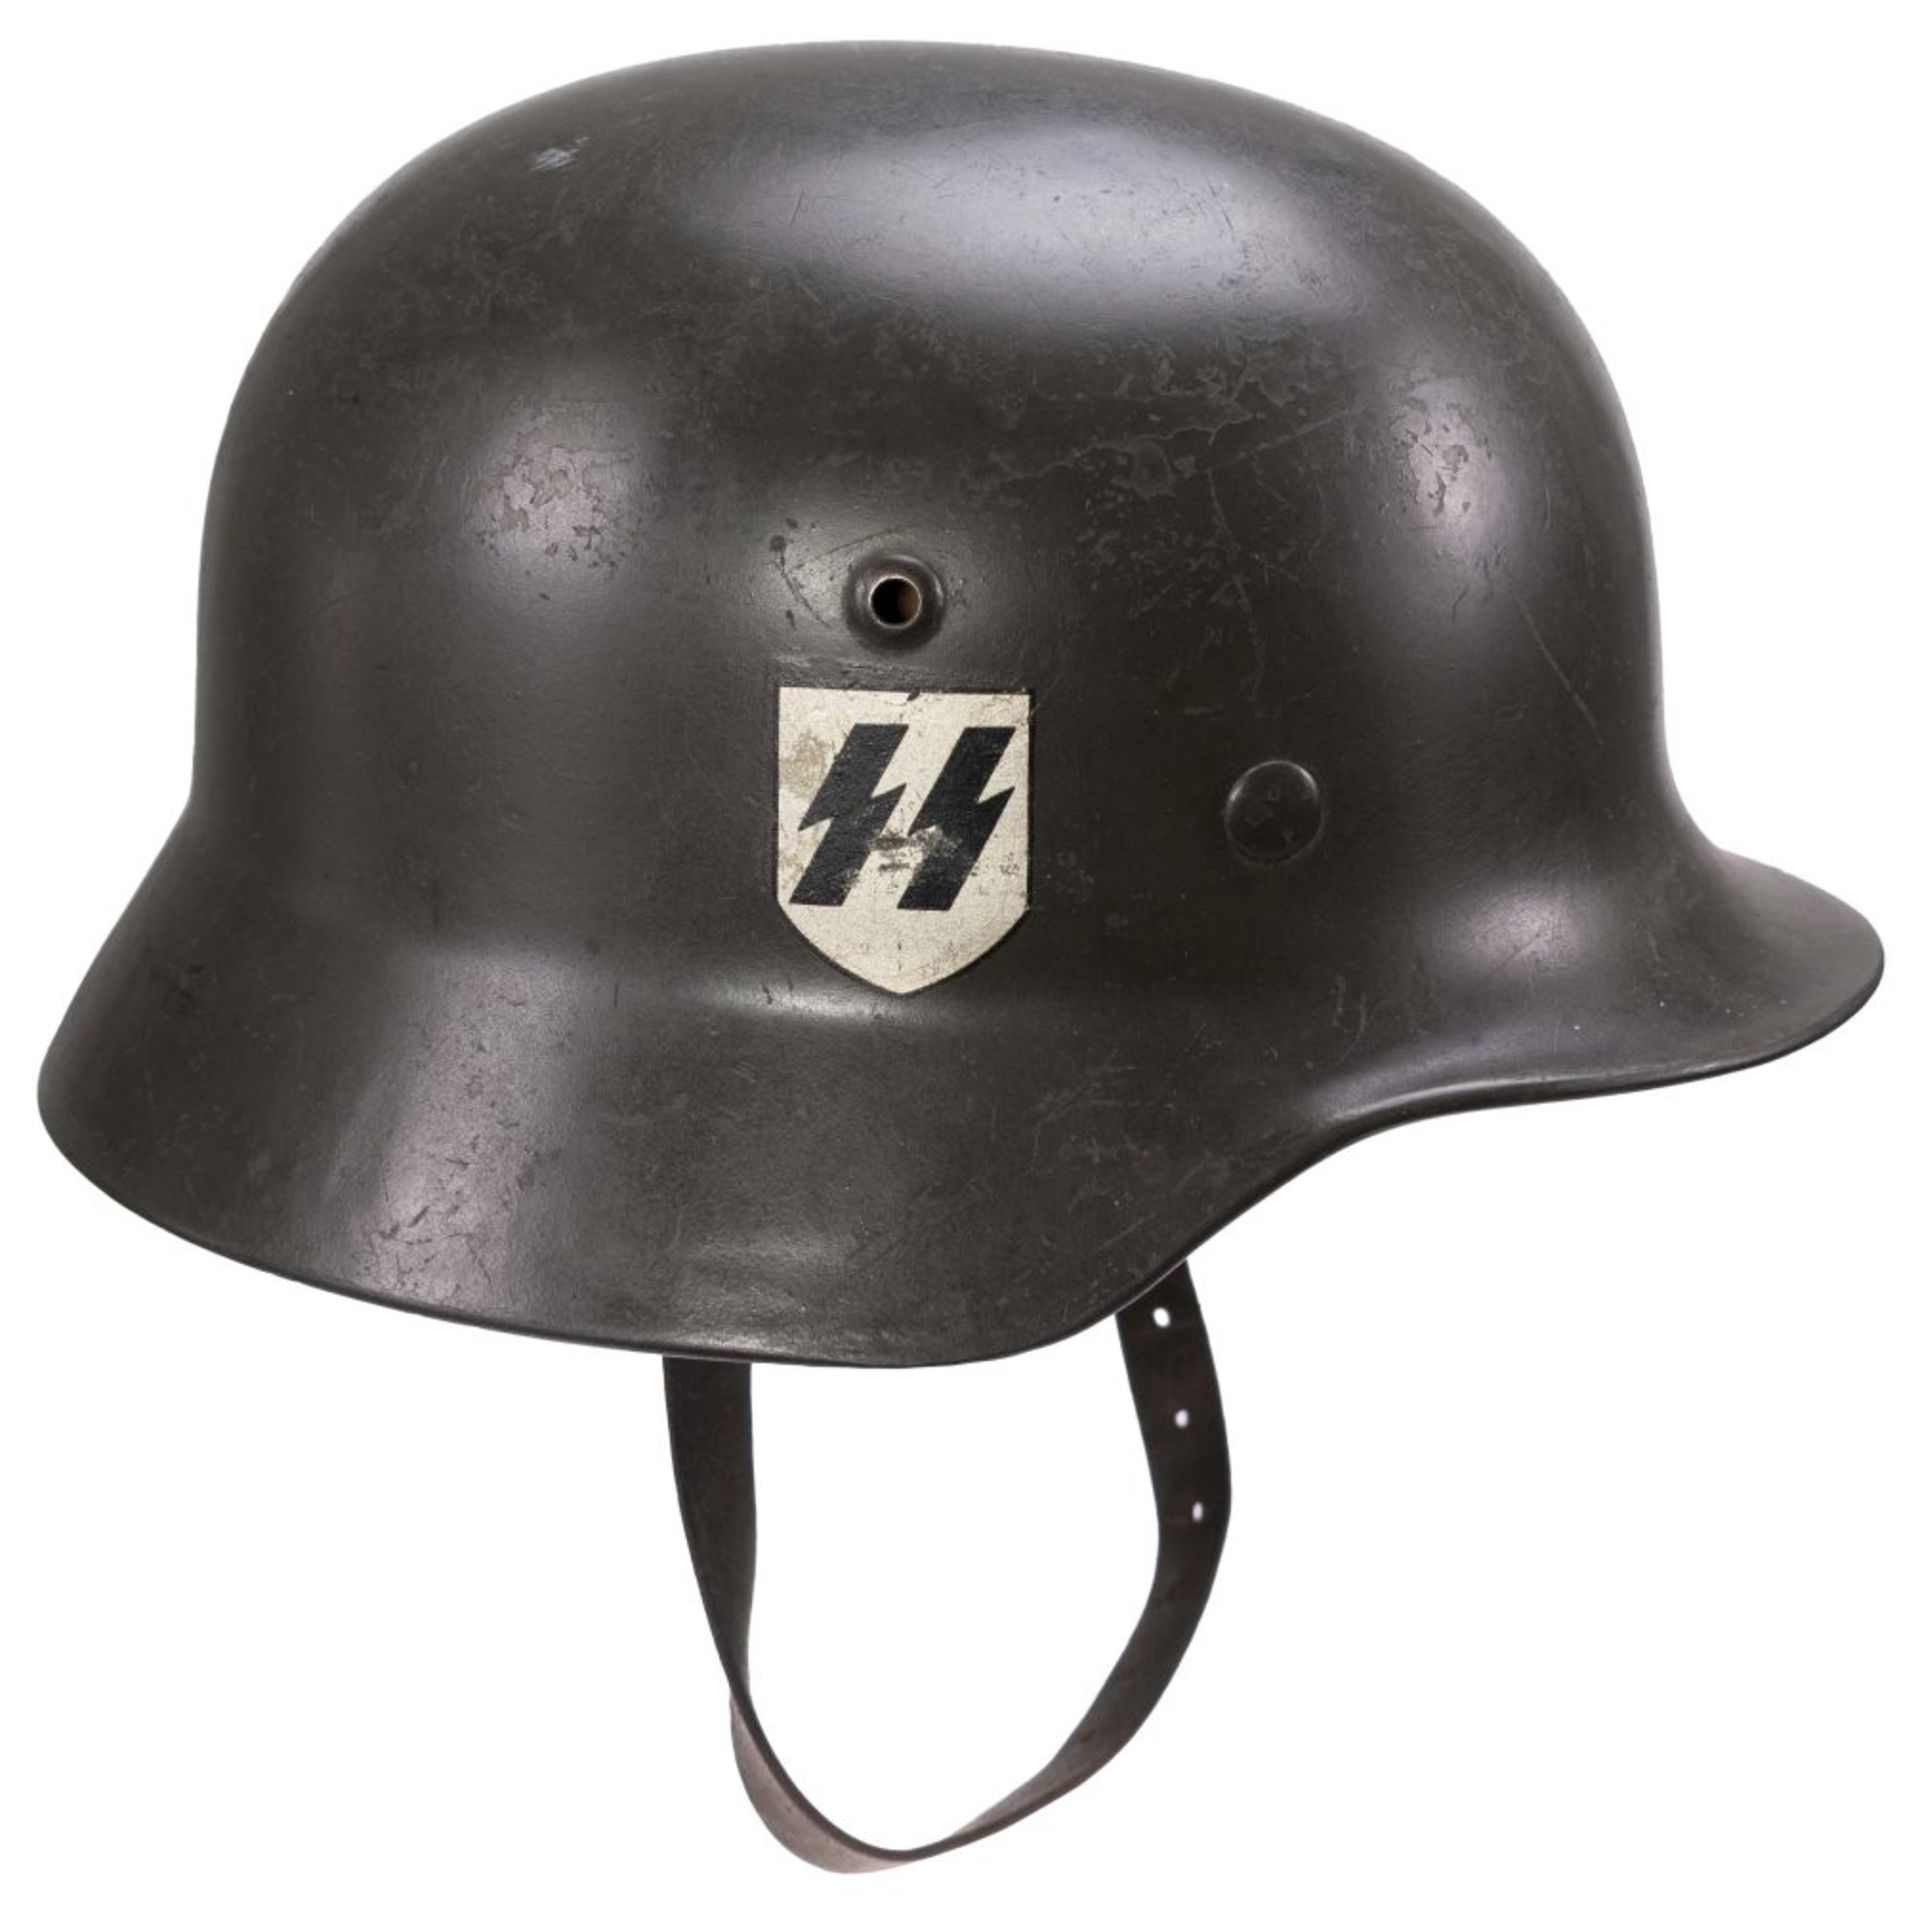 Waffen-SS, Stahlhelm M35 mit beiden Emblemen, grün lackierte Glocke, links die SS-Runen zu über